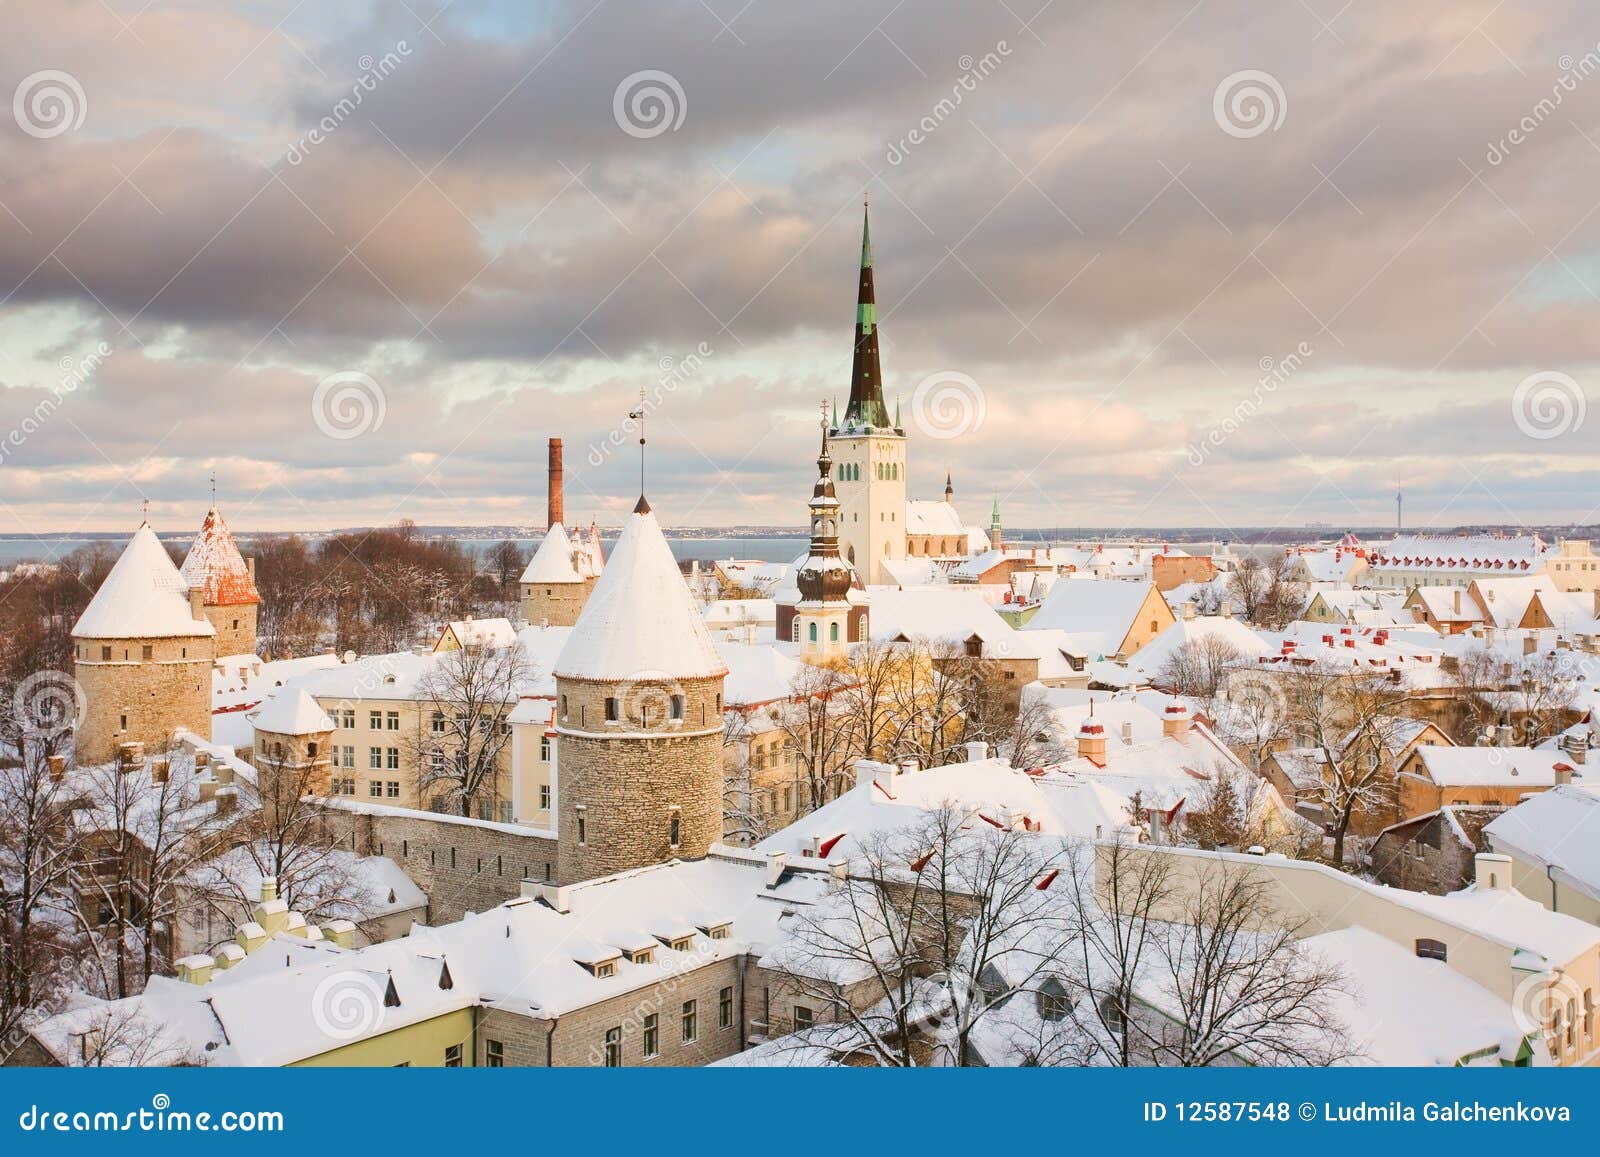 tallinn, old city. estonia